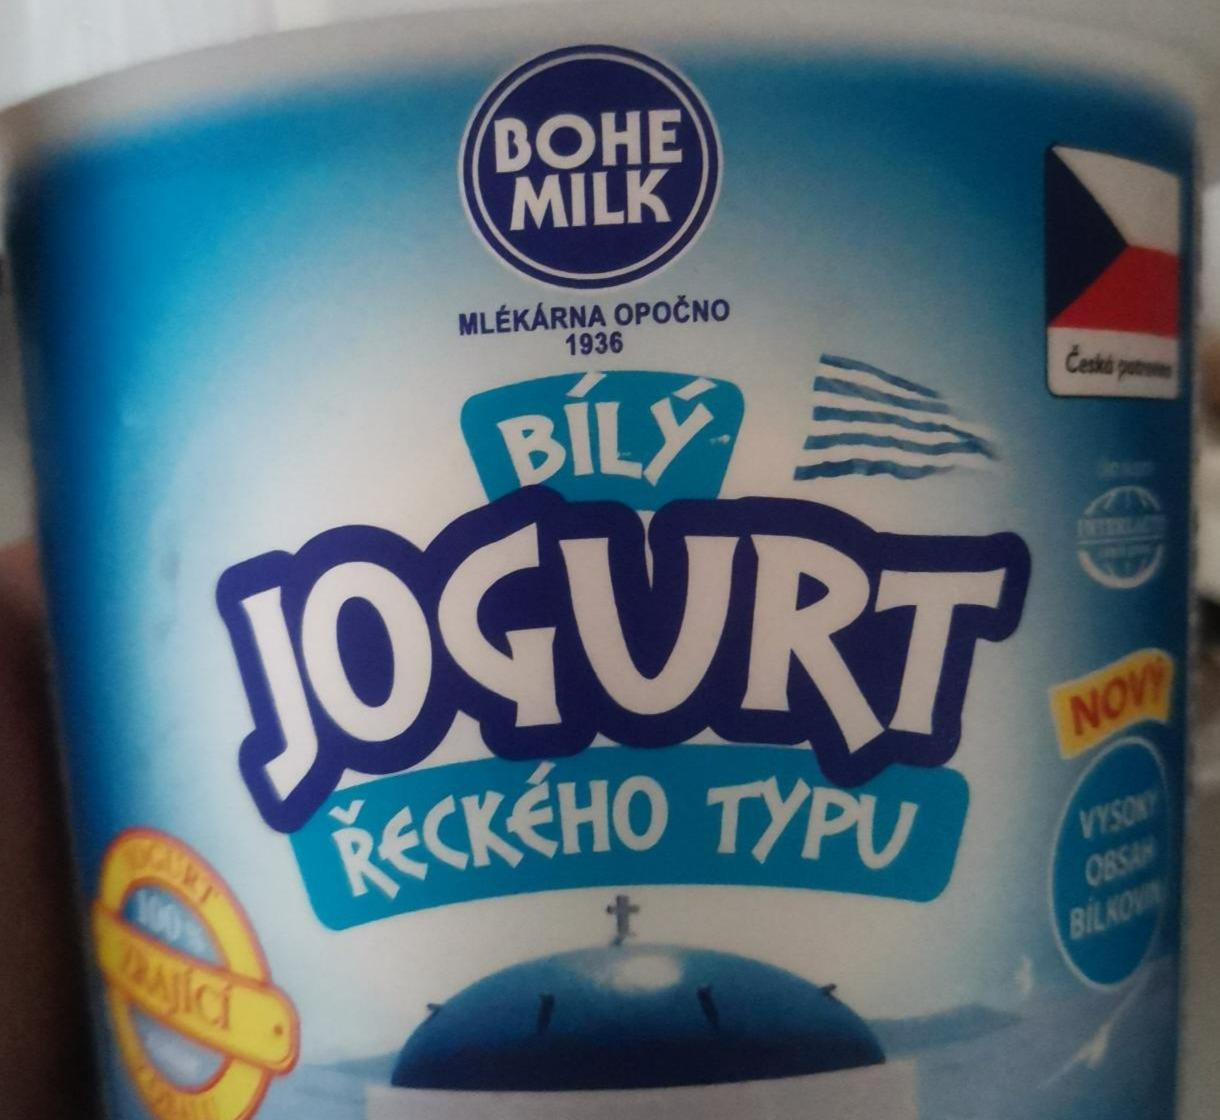 Fotografie - Bílý jogurt řeckého typu Bohemilk